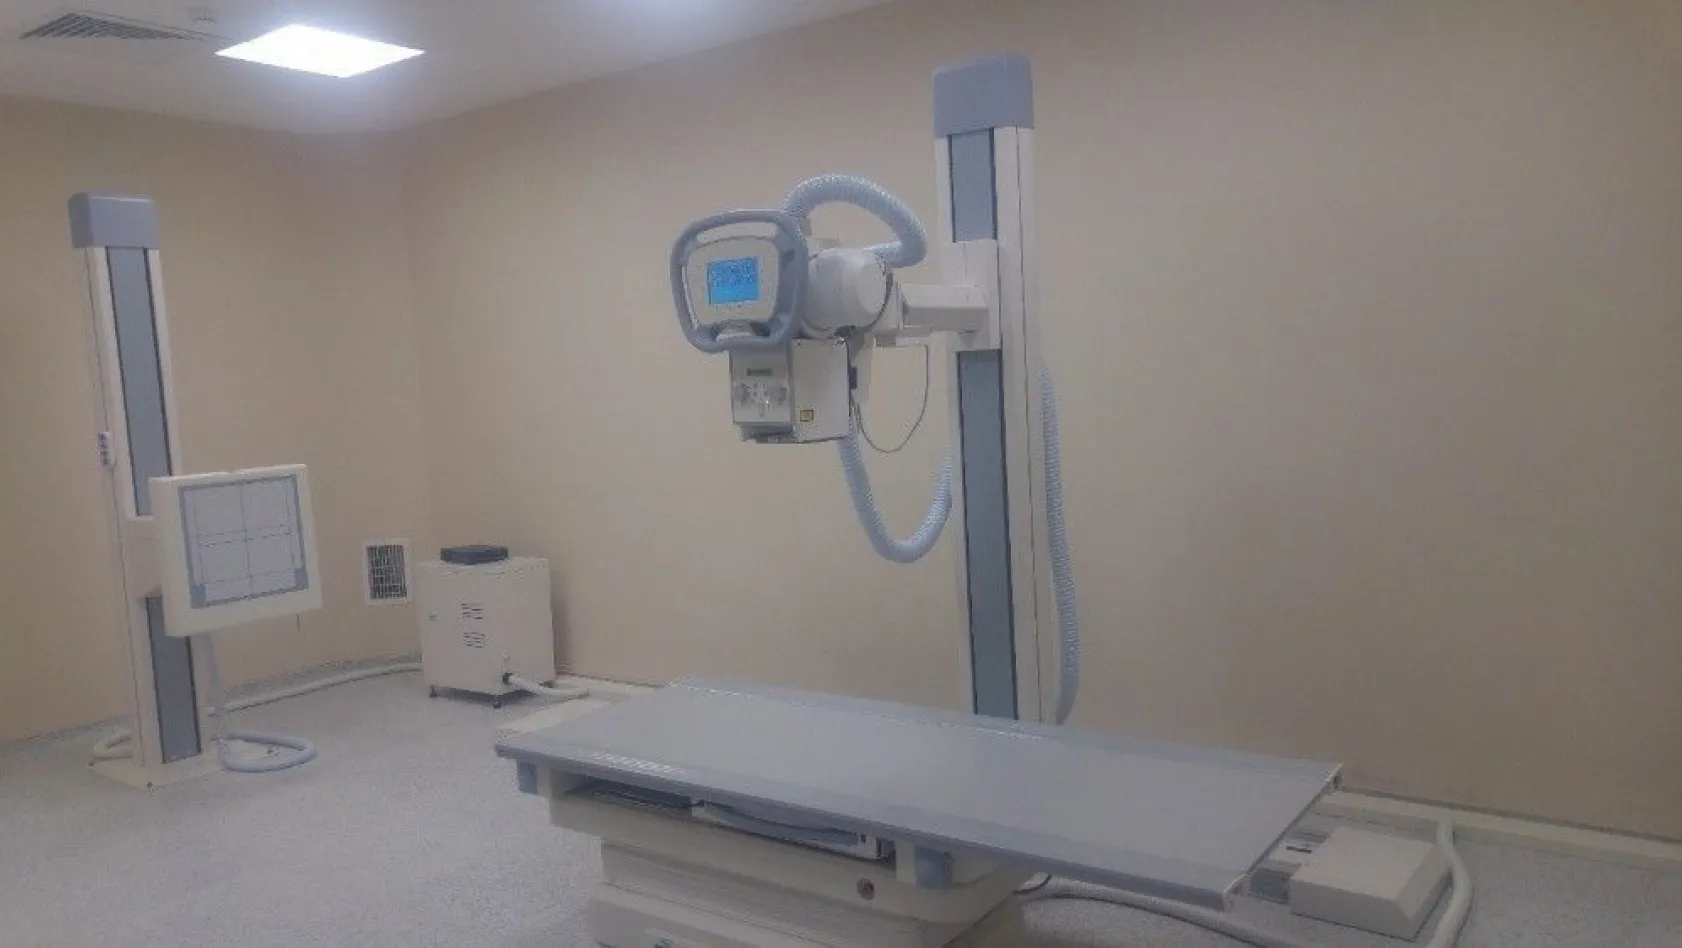 Gölbaşı Devlet Hastanesine yeni röntgen cihazı alındı
